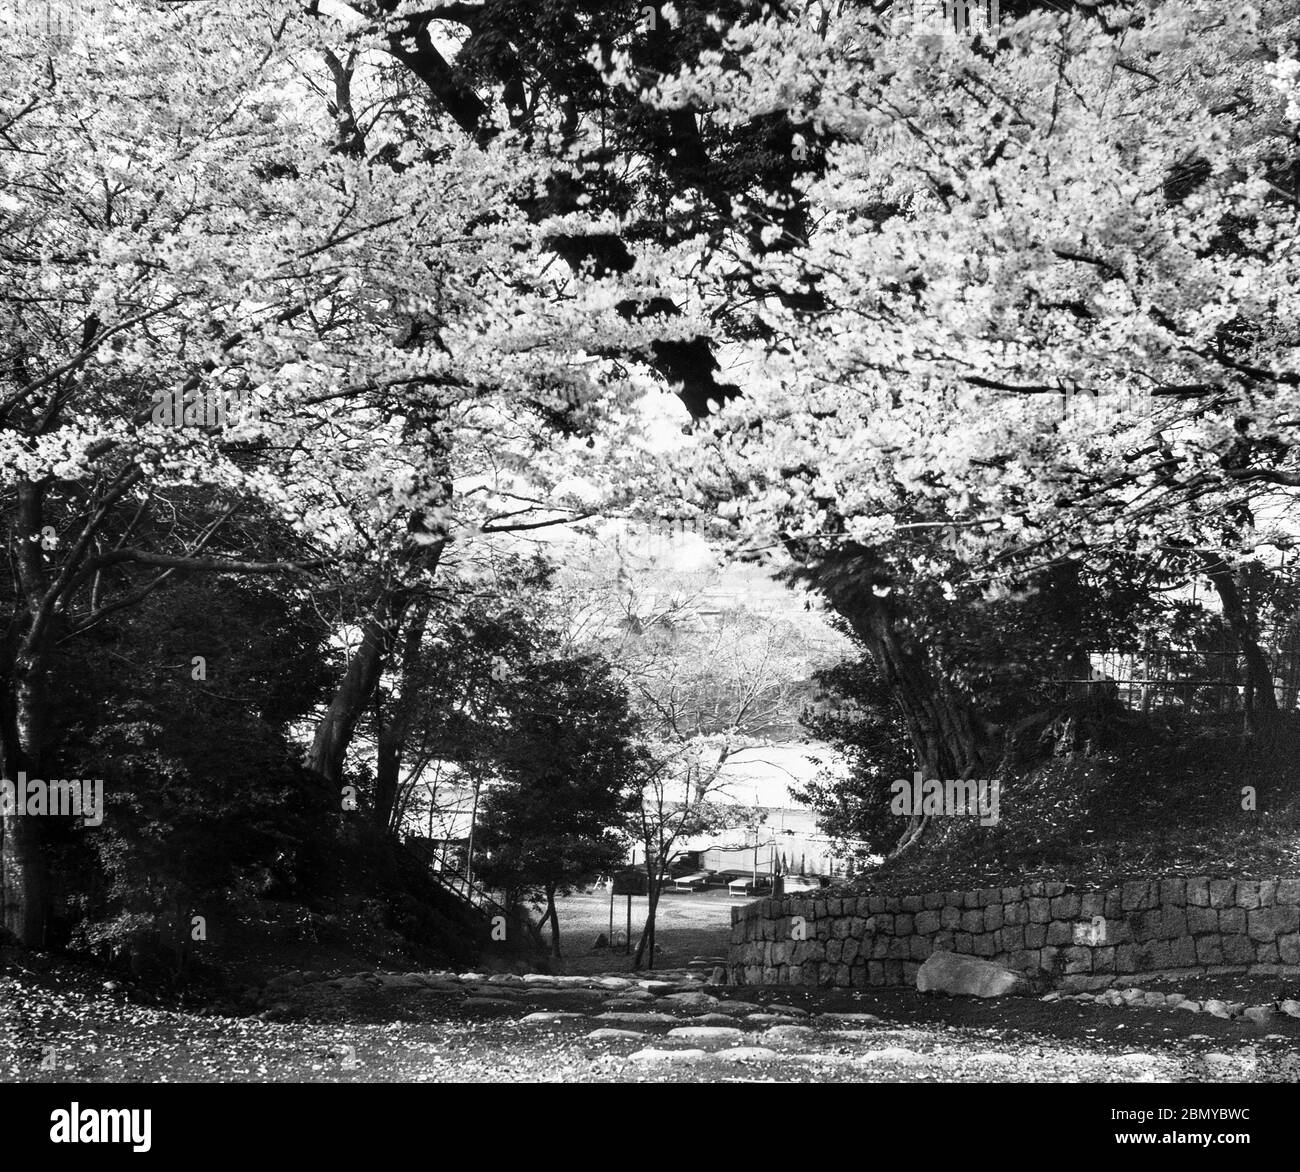 [ 1890er Jahre Japan - Ueno Park, Tokyo ] - Kirschblüte im Ueno Park in Tokio. Im Hintergrund kann man einen Blick auf den Shinobazu Teich erhaschen. Aus einer Serie von Glasdias, die vom schottischen Fotografen George Washington Wilson (1823–1893) veröffentlicht (aber nicht fotografiert) wurden. Wilsons Firma war einer der größten Verleger von Fotodrucken in der Welt. 19. Jahrhundert Vintage Glas Rutsche. Stockfoto